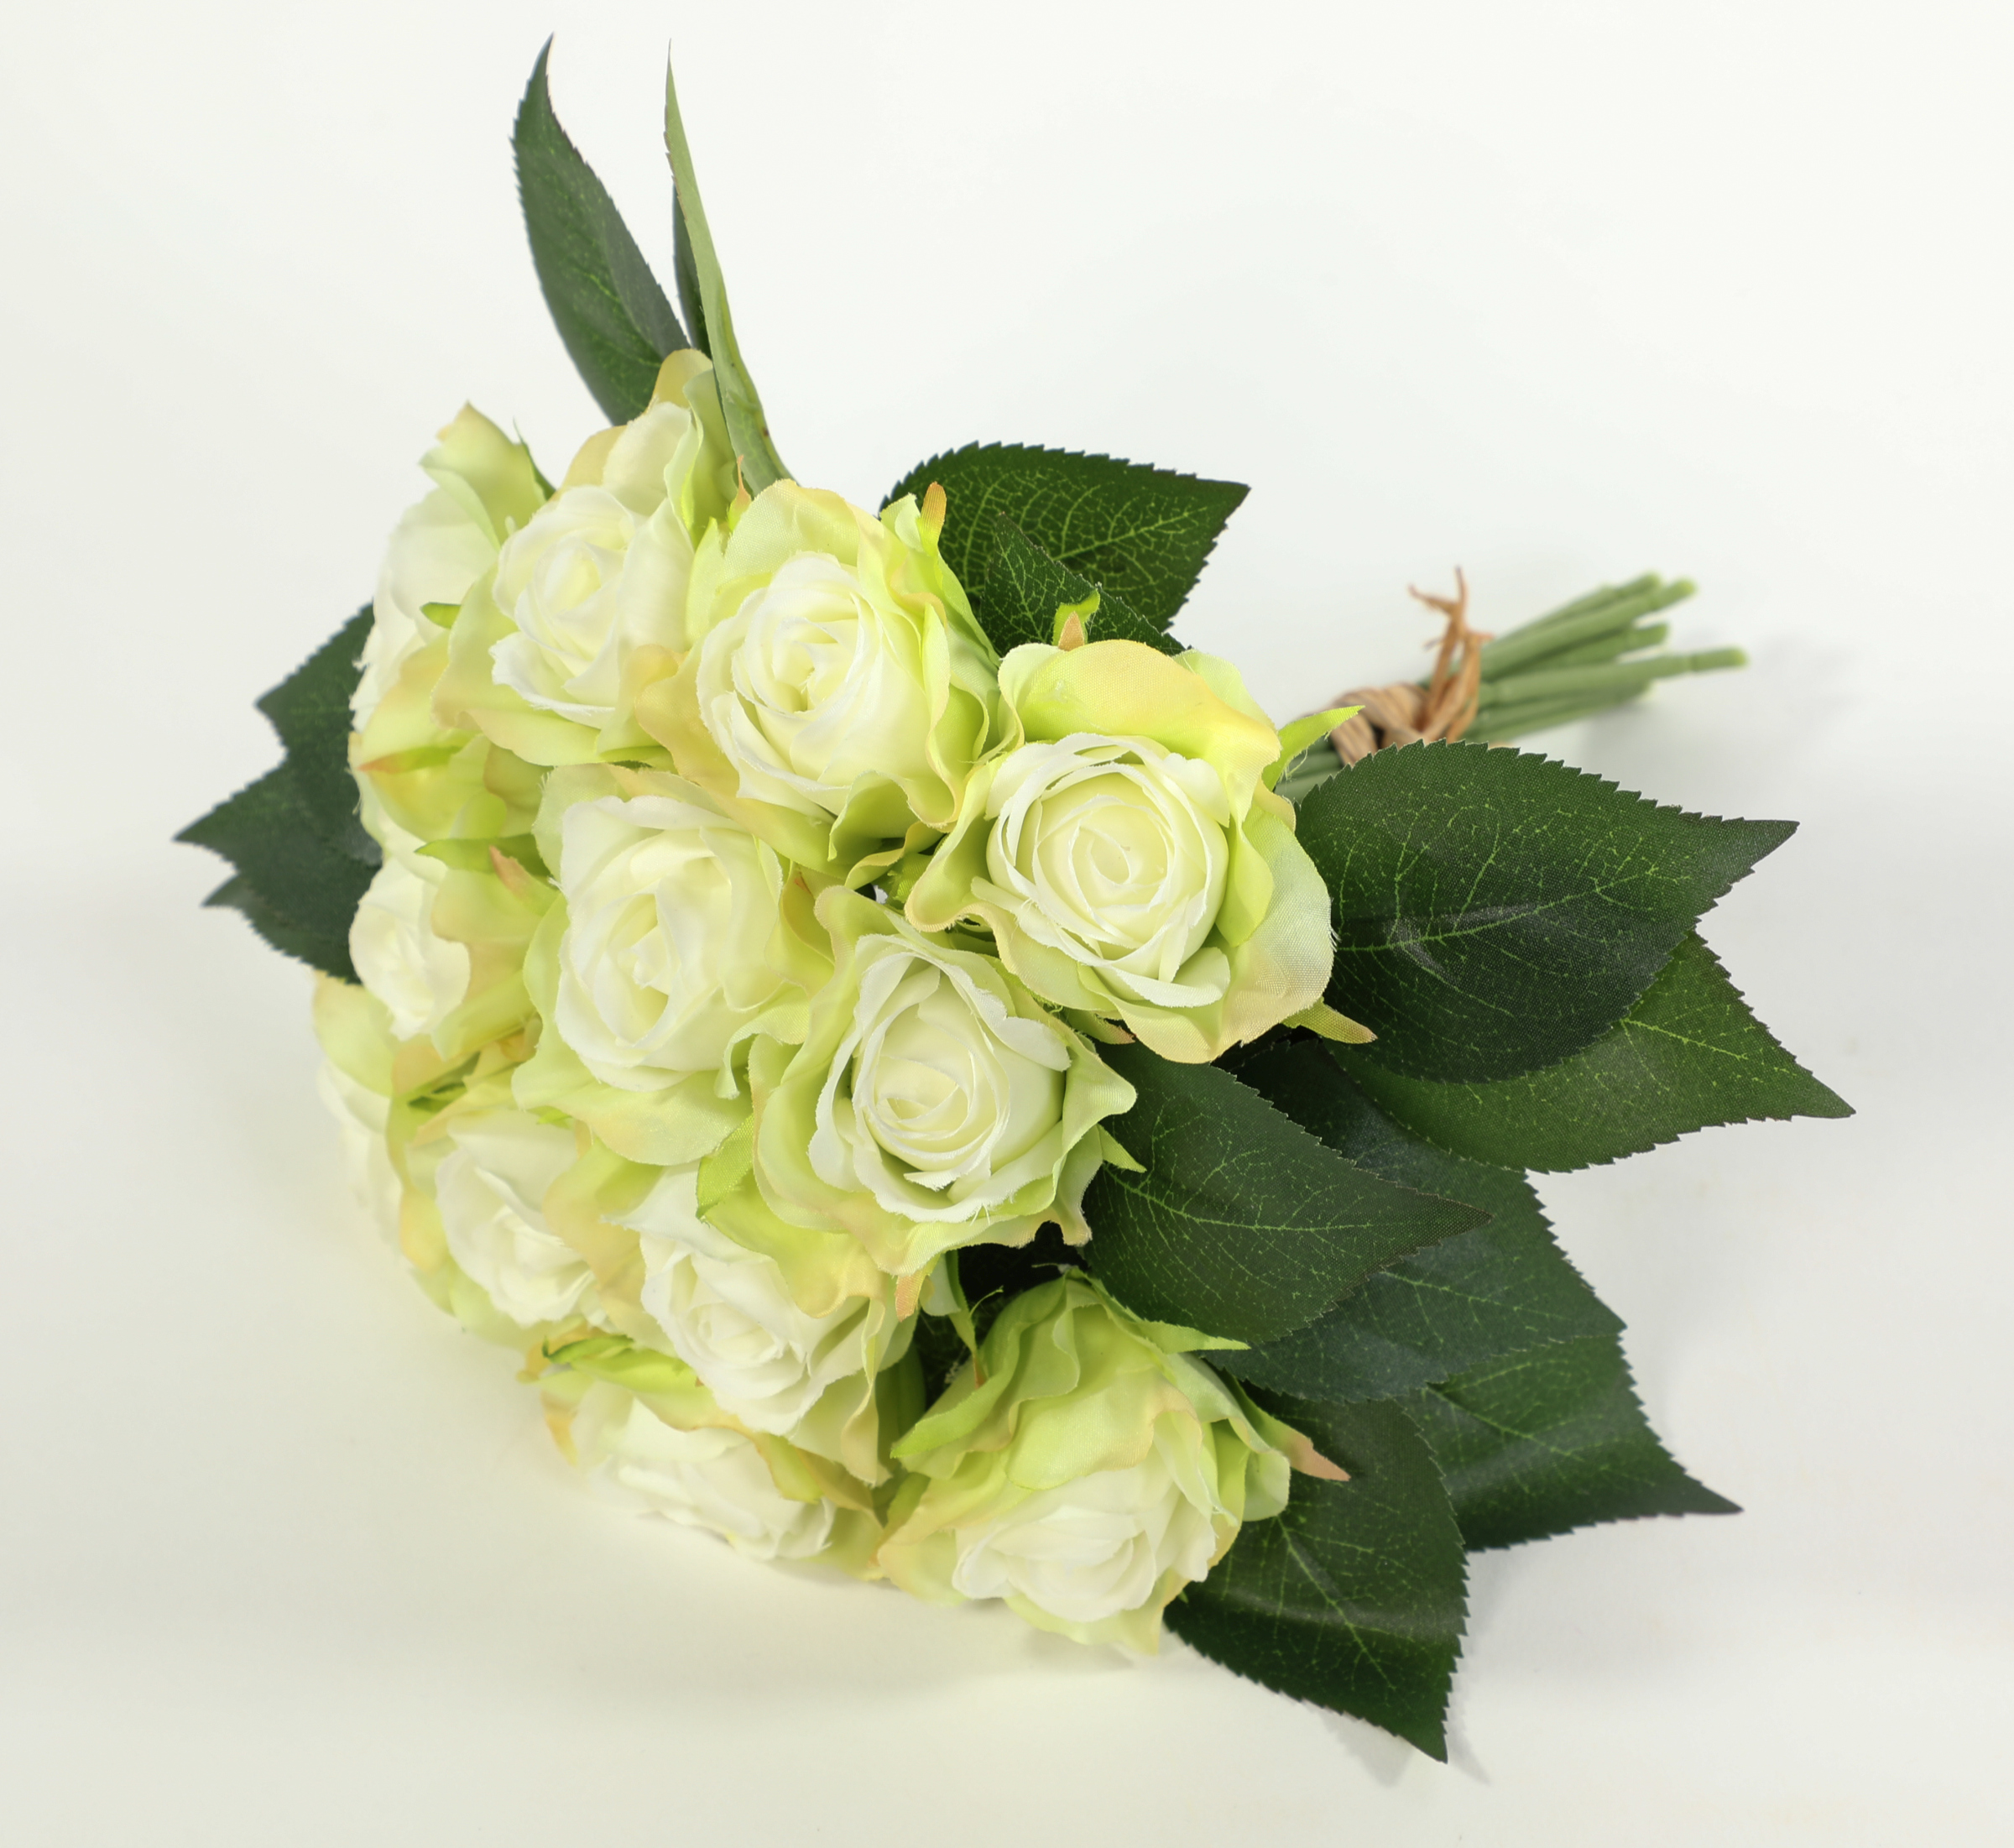 Rosenstrauß weiß-grün Kunstblumen Rosenbouquet CG künstlicher Rosen Strauß 12 25cm mit Rosen